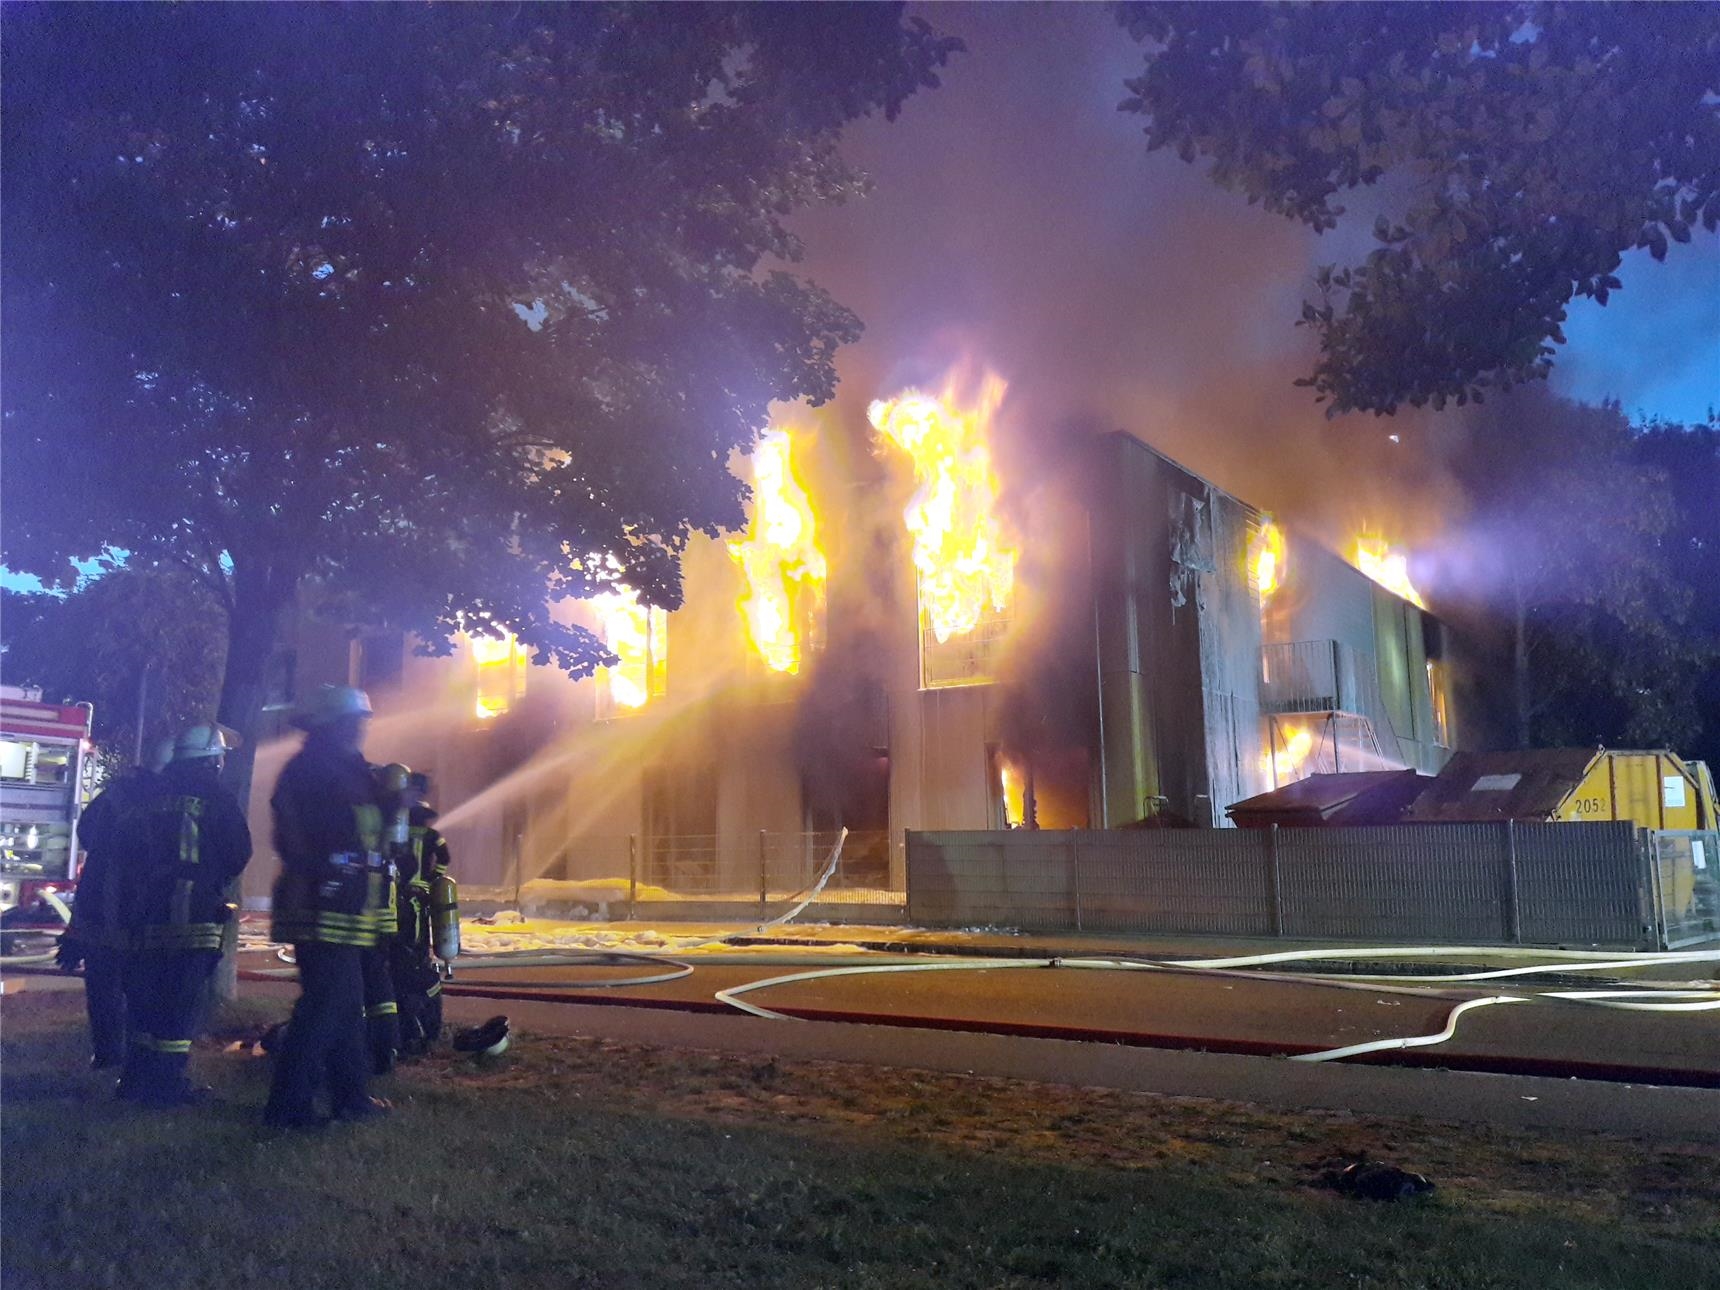 Das Caritas-Sozialzentrum in Augsburg-Göggingen, Depotstraße 5, brannte am Sonntagabend lichterloh. (Annette Zoepf)